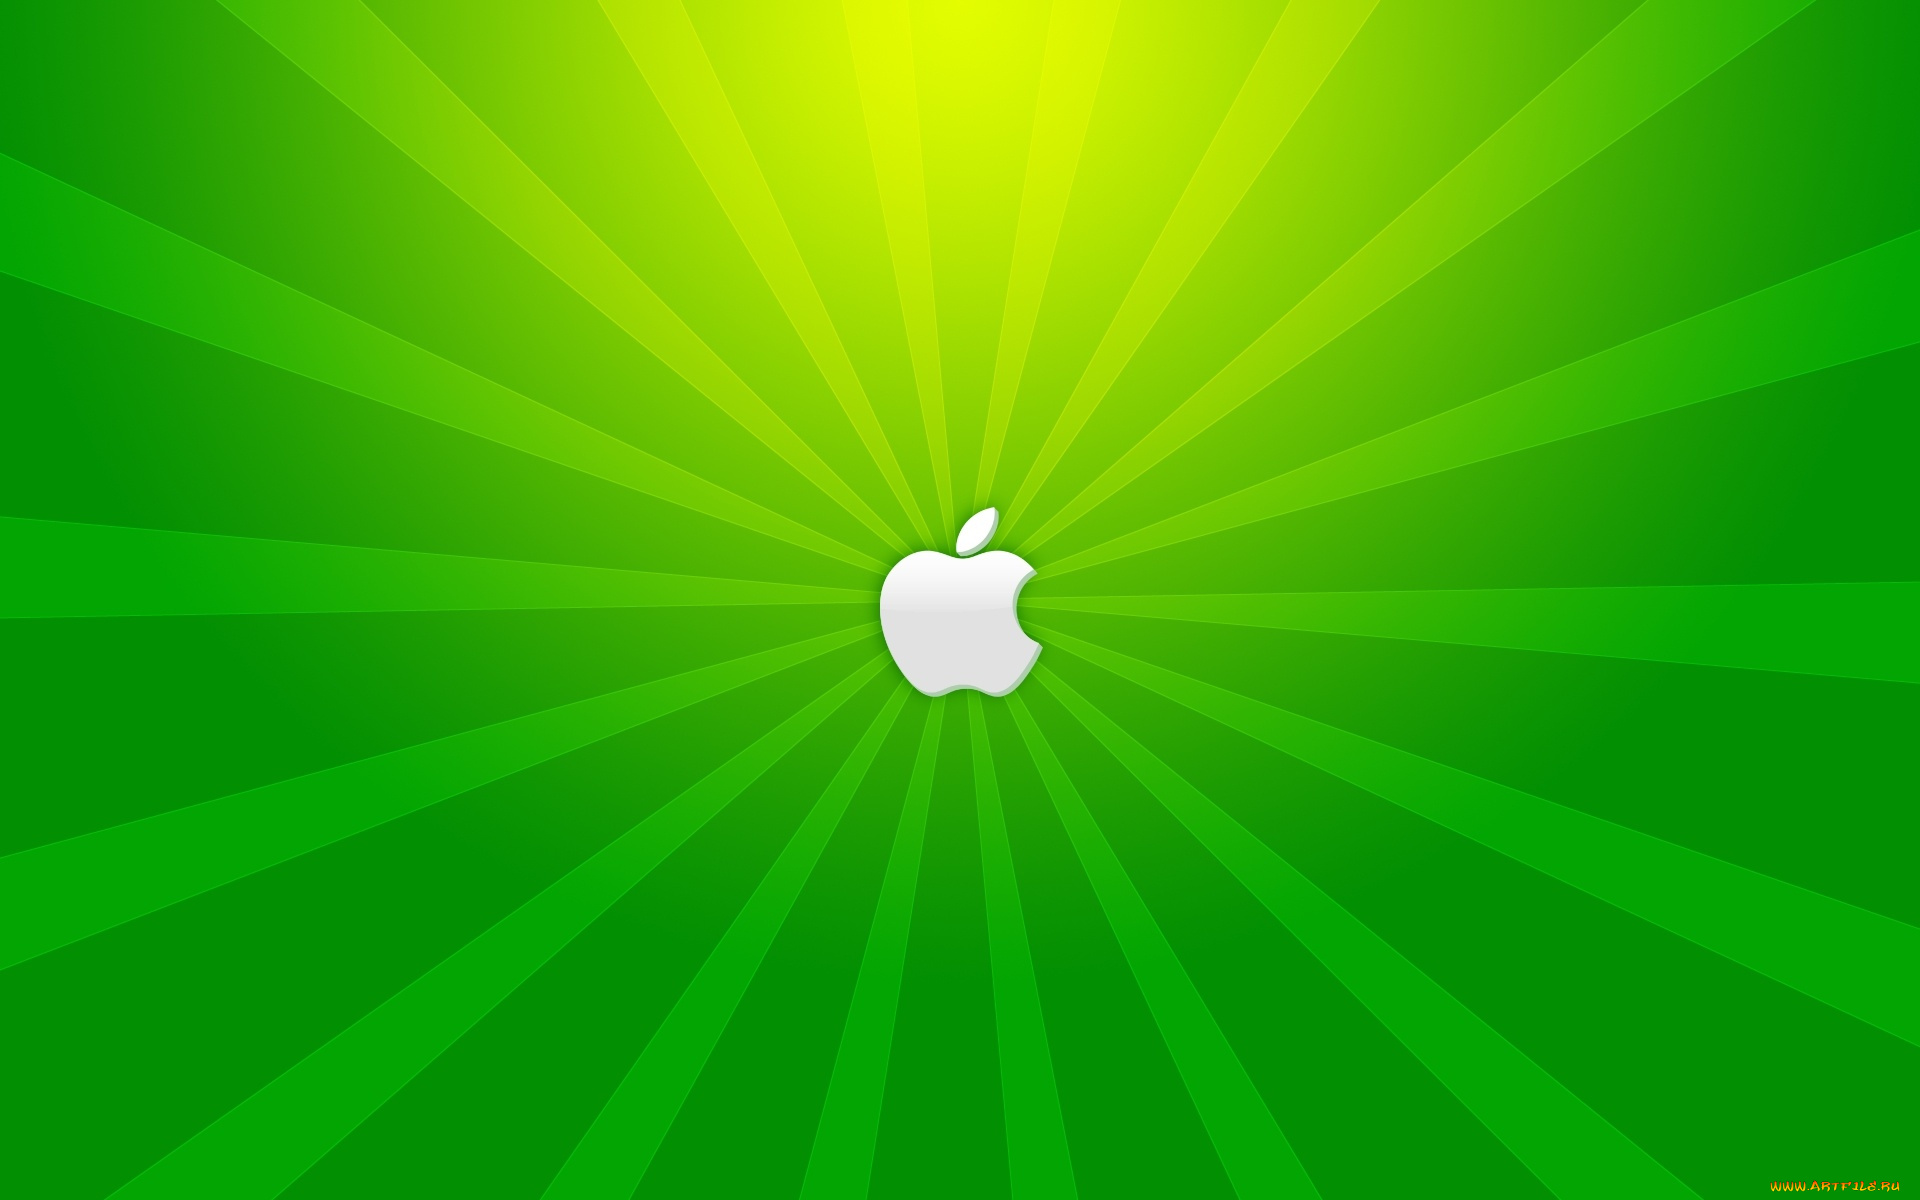 компьютеры, apple, полосы, лучи, яблоко, логотип, зеленый